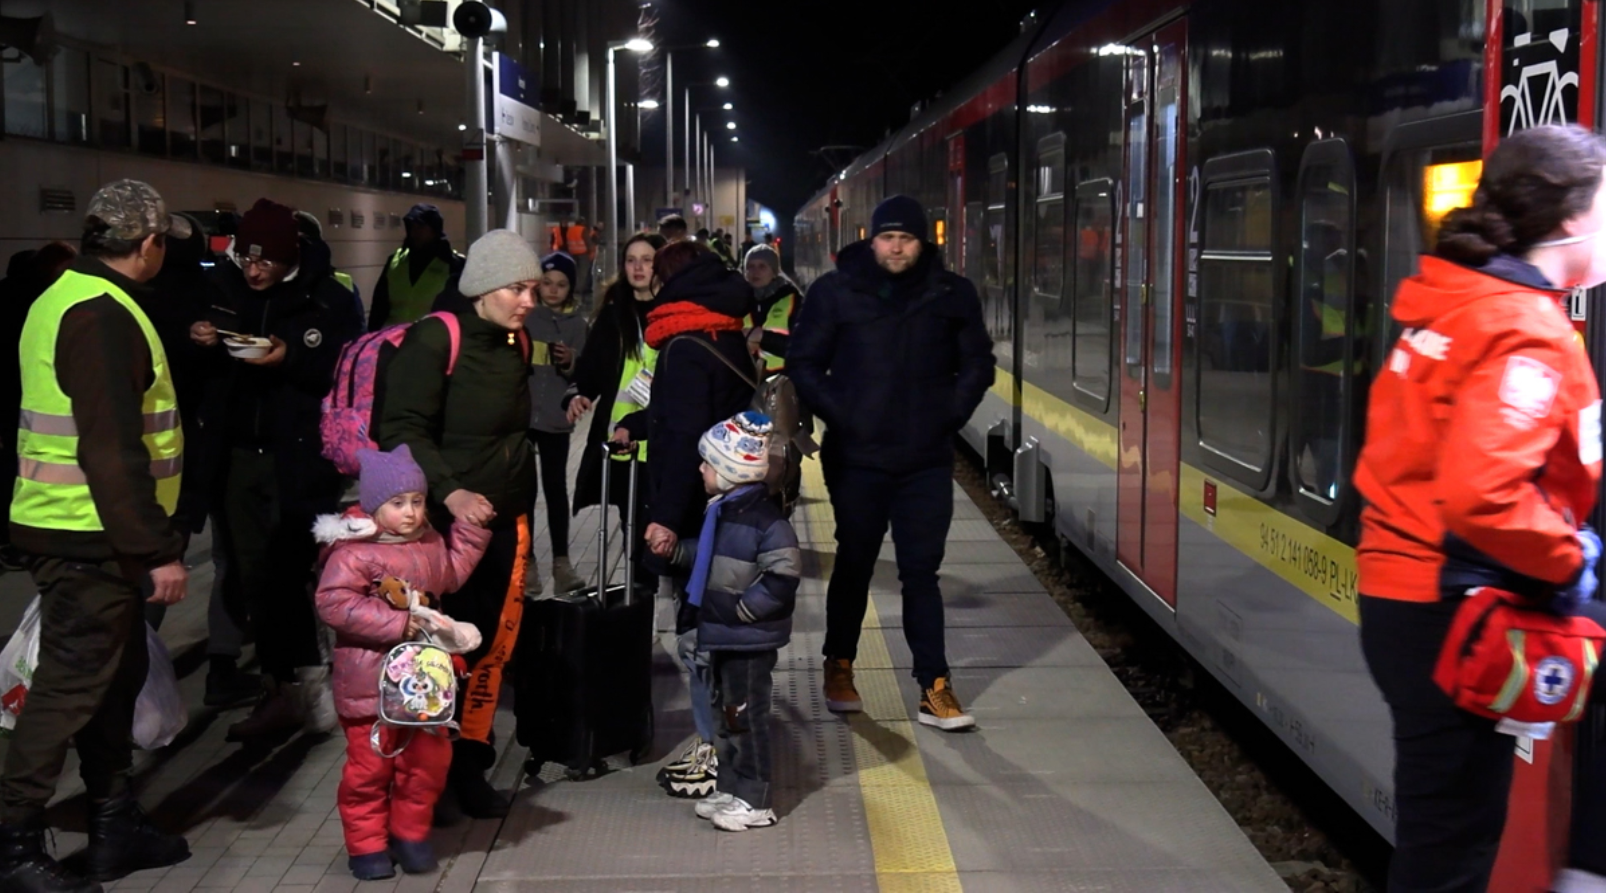 Ludzie czekający na peronie aby wejść do pociągu. Na pierwszym planie matka z małymi dziećmi.